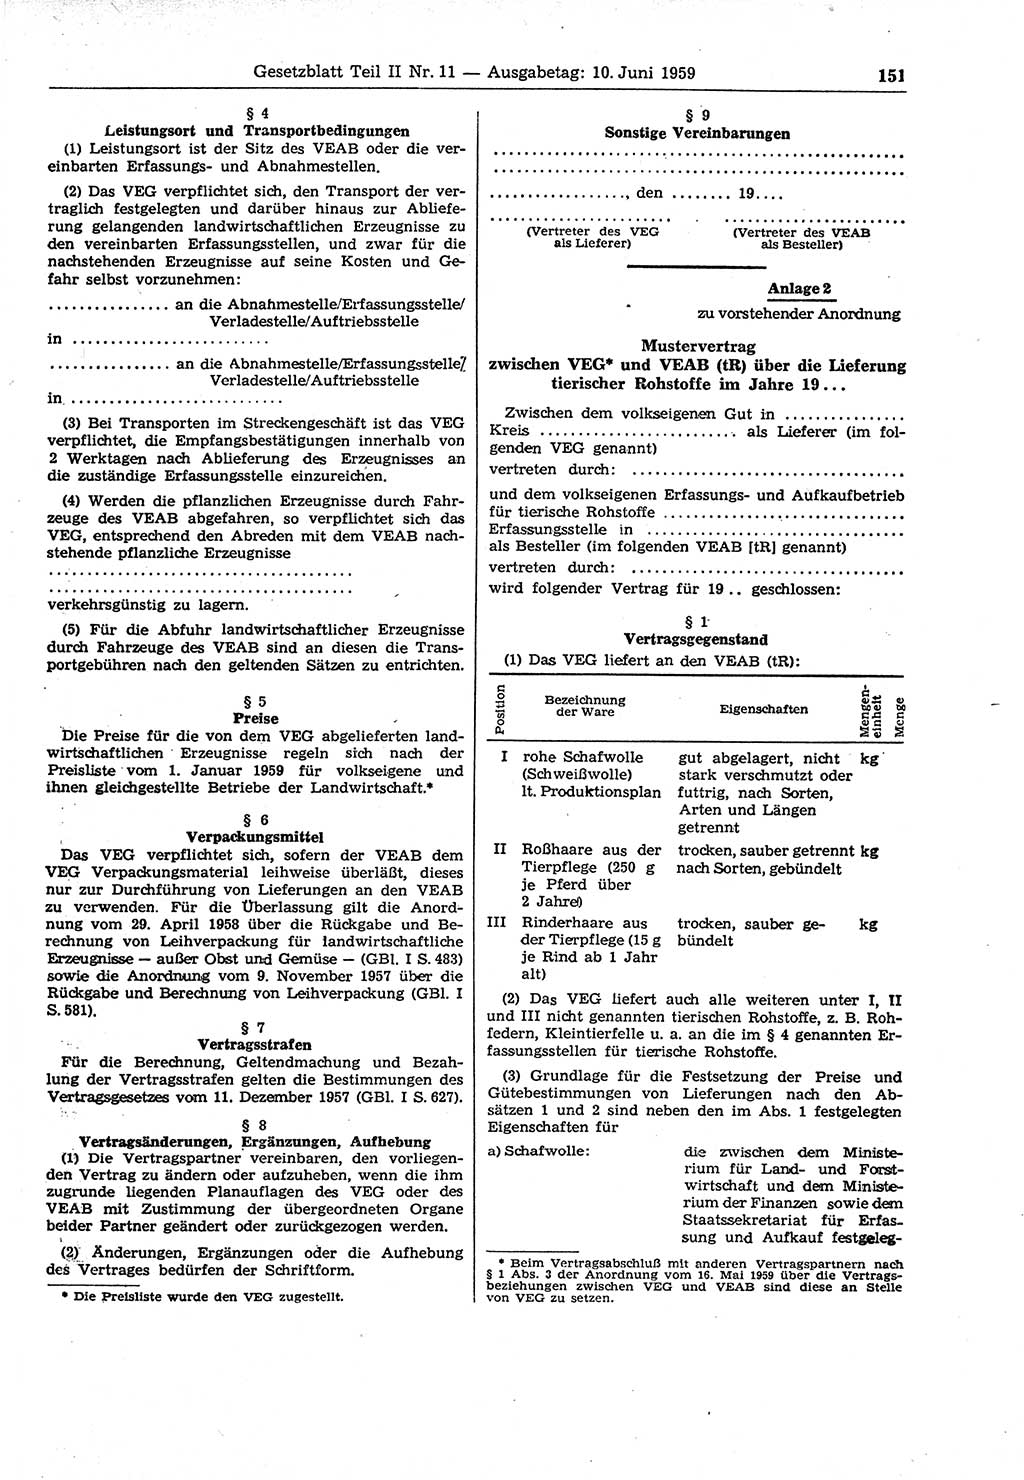 Gesetzblatt (GBl.) der Deutschen Demokratischen Republik (DDR) Teil ⅠⅠ 1959, Seite 151 (GBl. DDR ⅠⅠ 1959, S. 151)